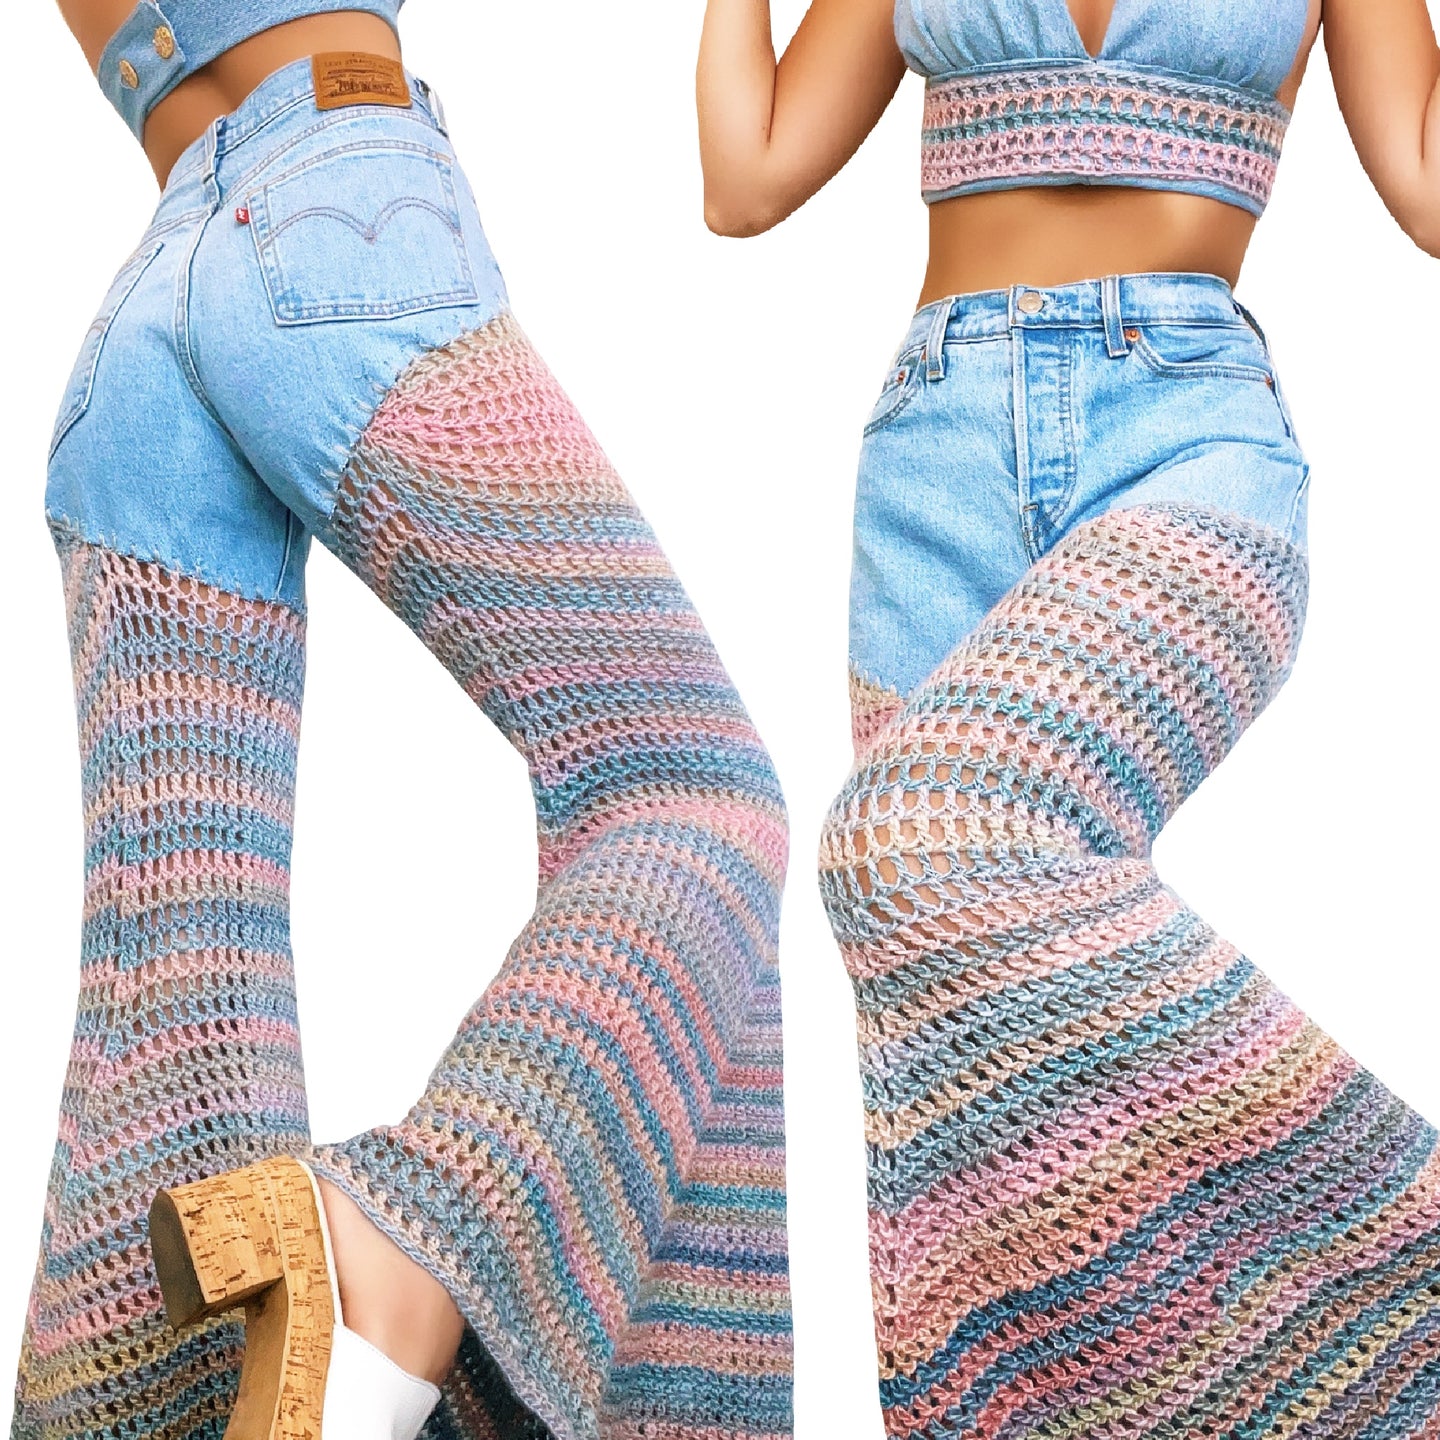 Reworked Cotton Candy Levi’s by Carolannie Crochet – ShopCarolannie